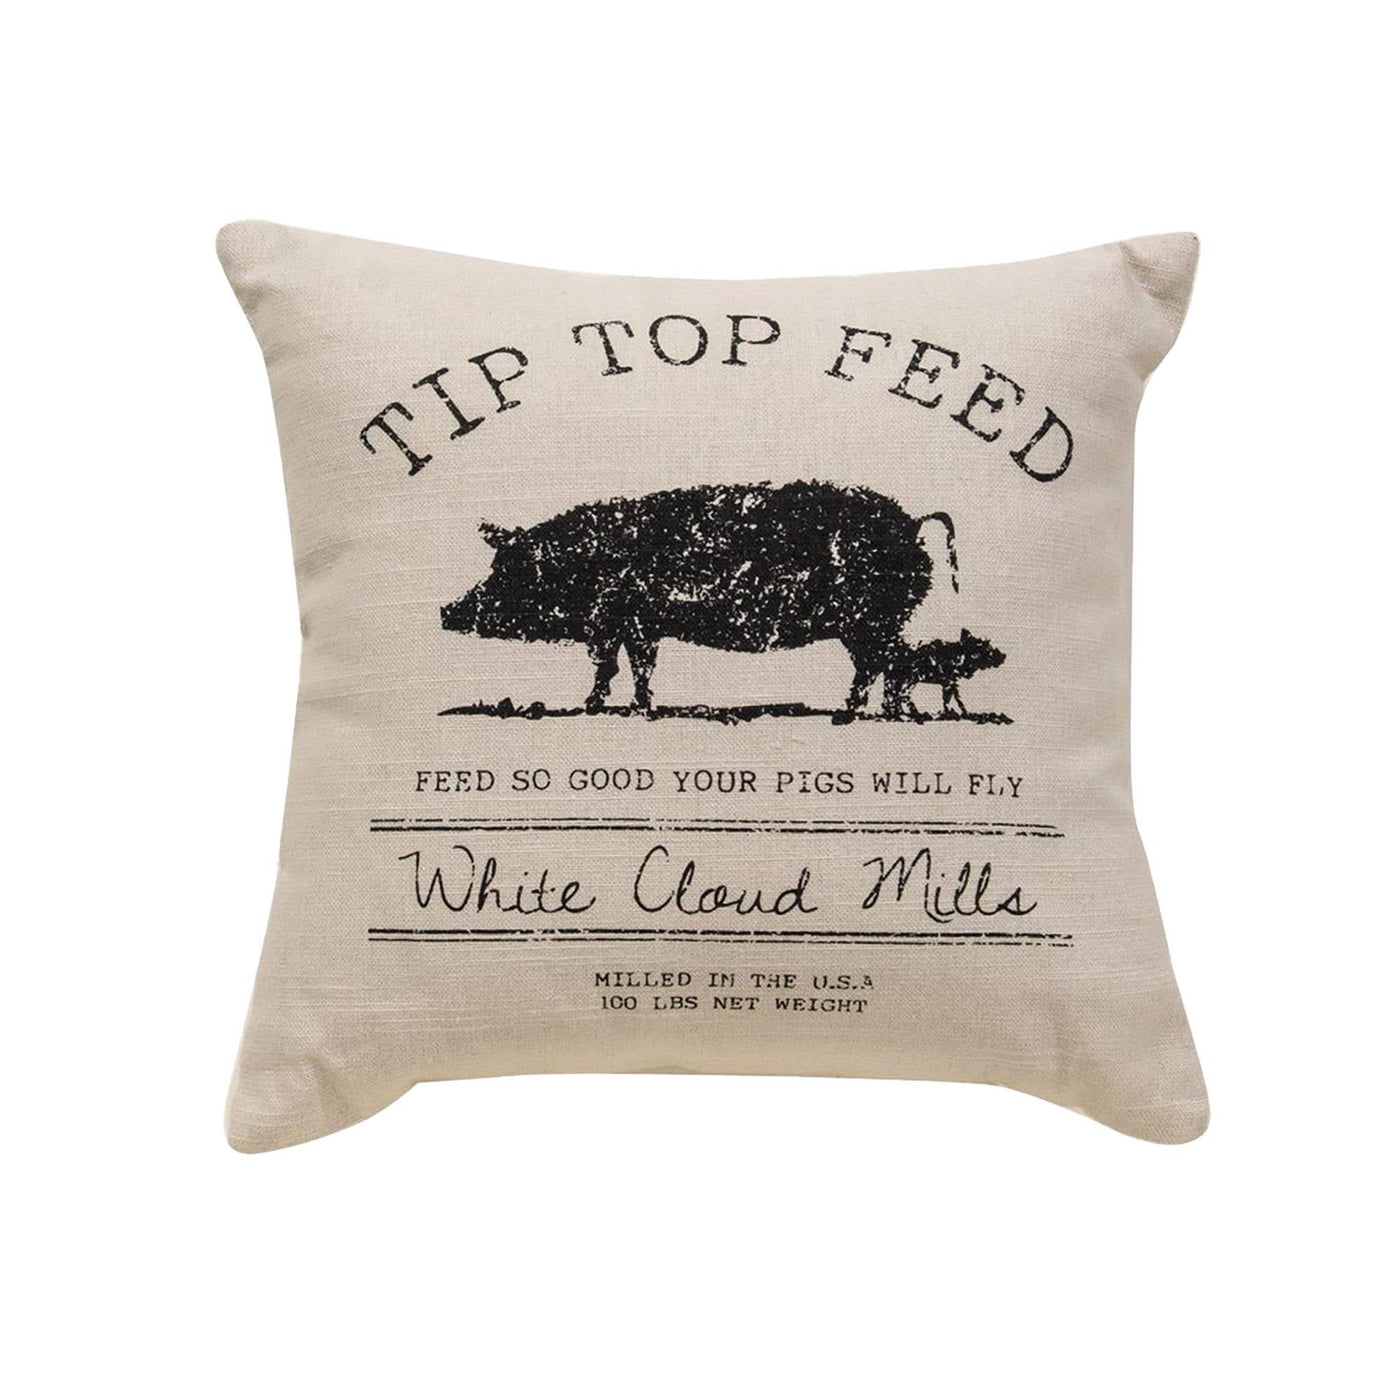 Tiptop Feed Farmhouse Pillow